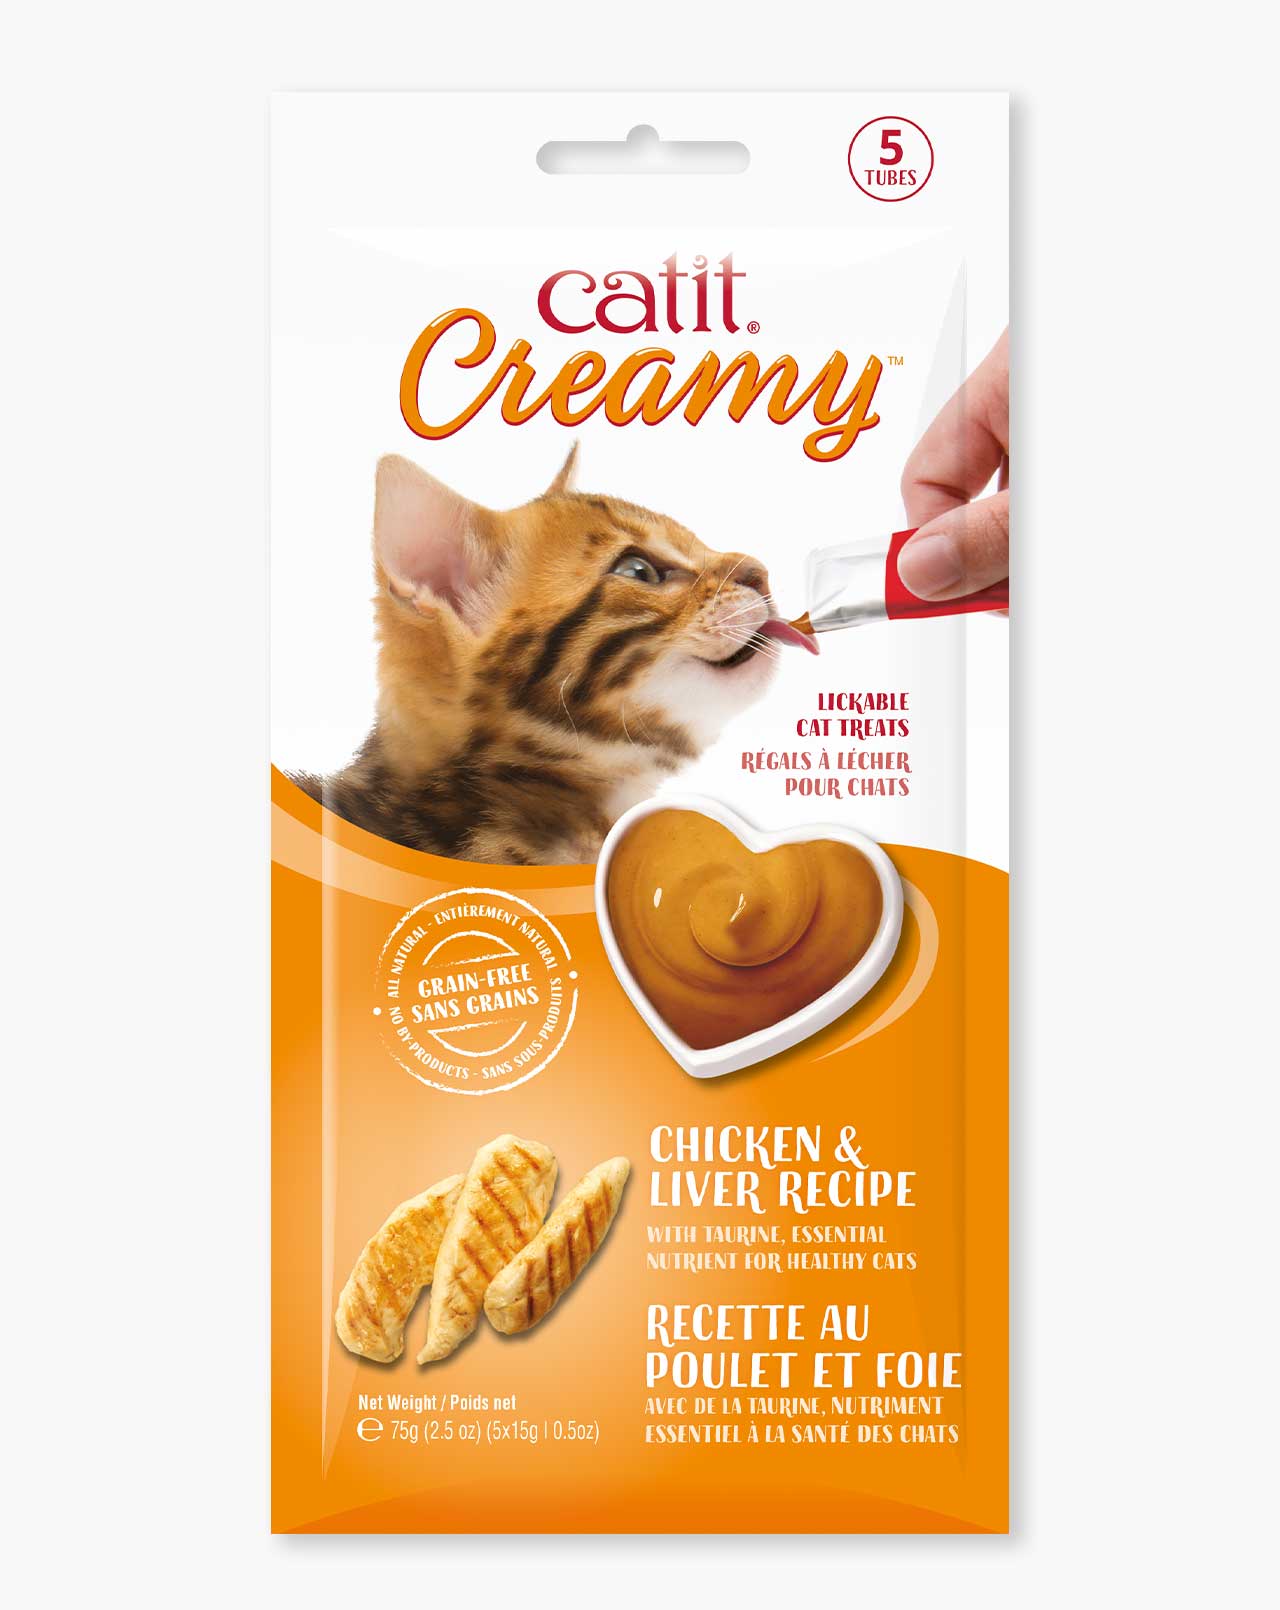 Catit Creamy Chicken & Liver